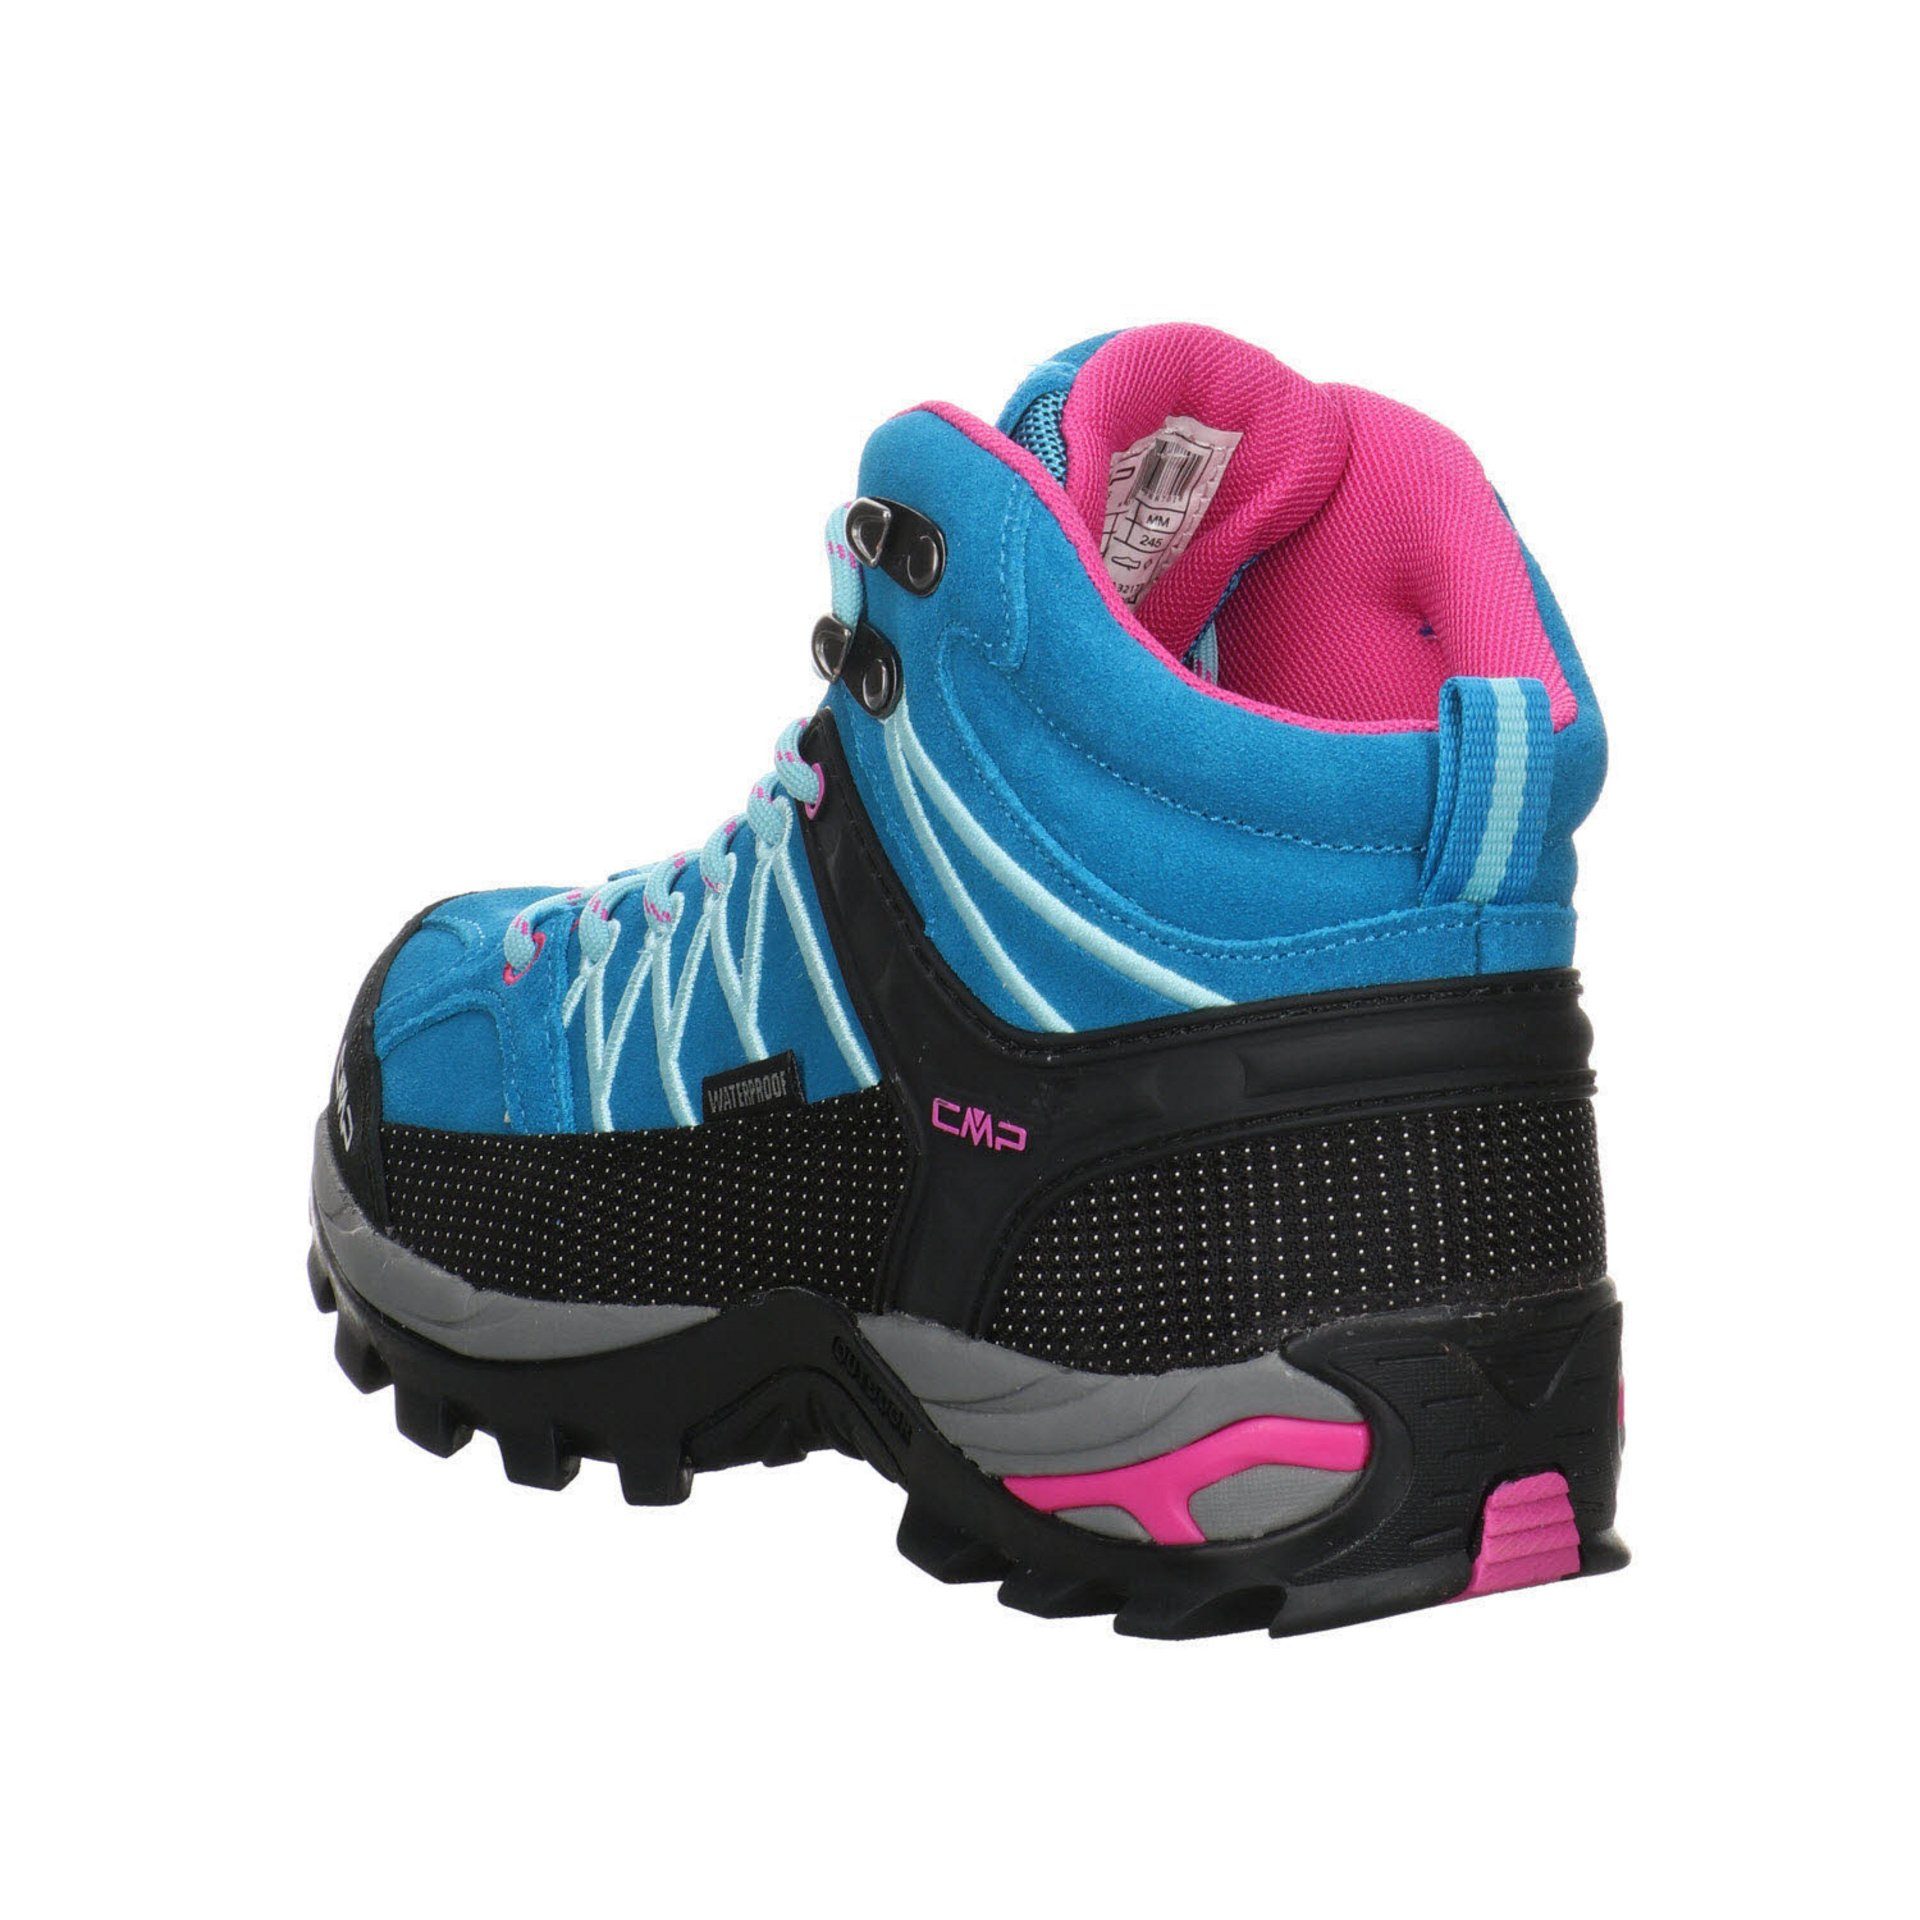 türkis-pink Schuhe CMP Rigel Outdoorschuh Outdoor Damen Leder-/Textilkombination Mid Outdoorschuh